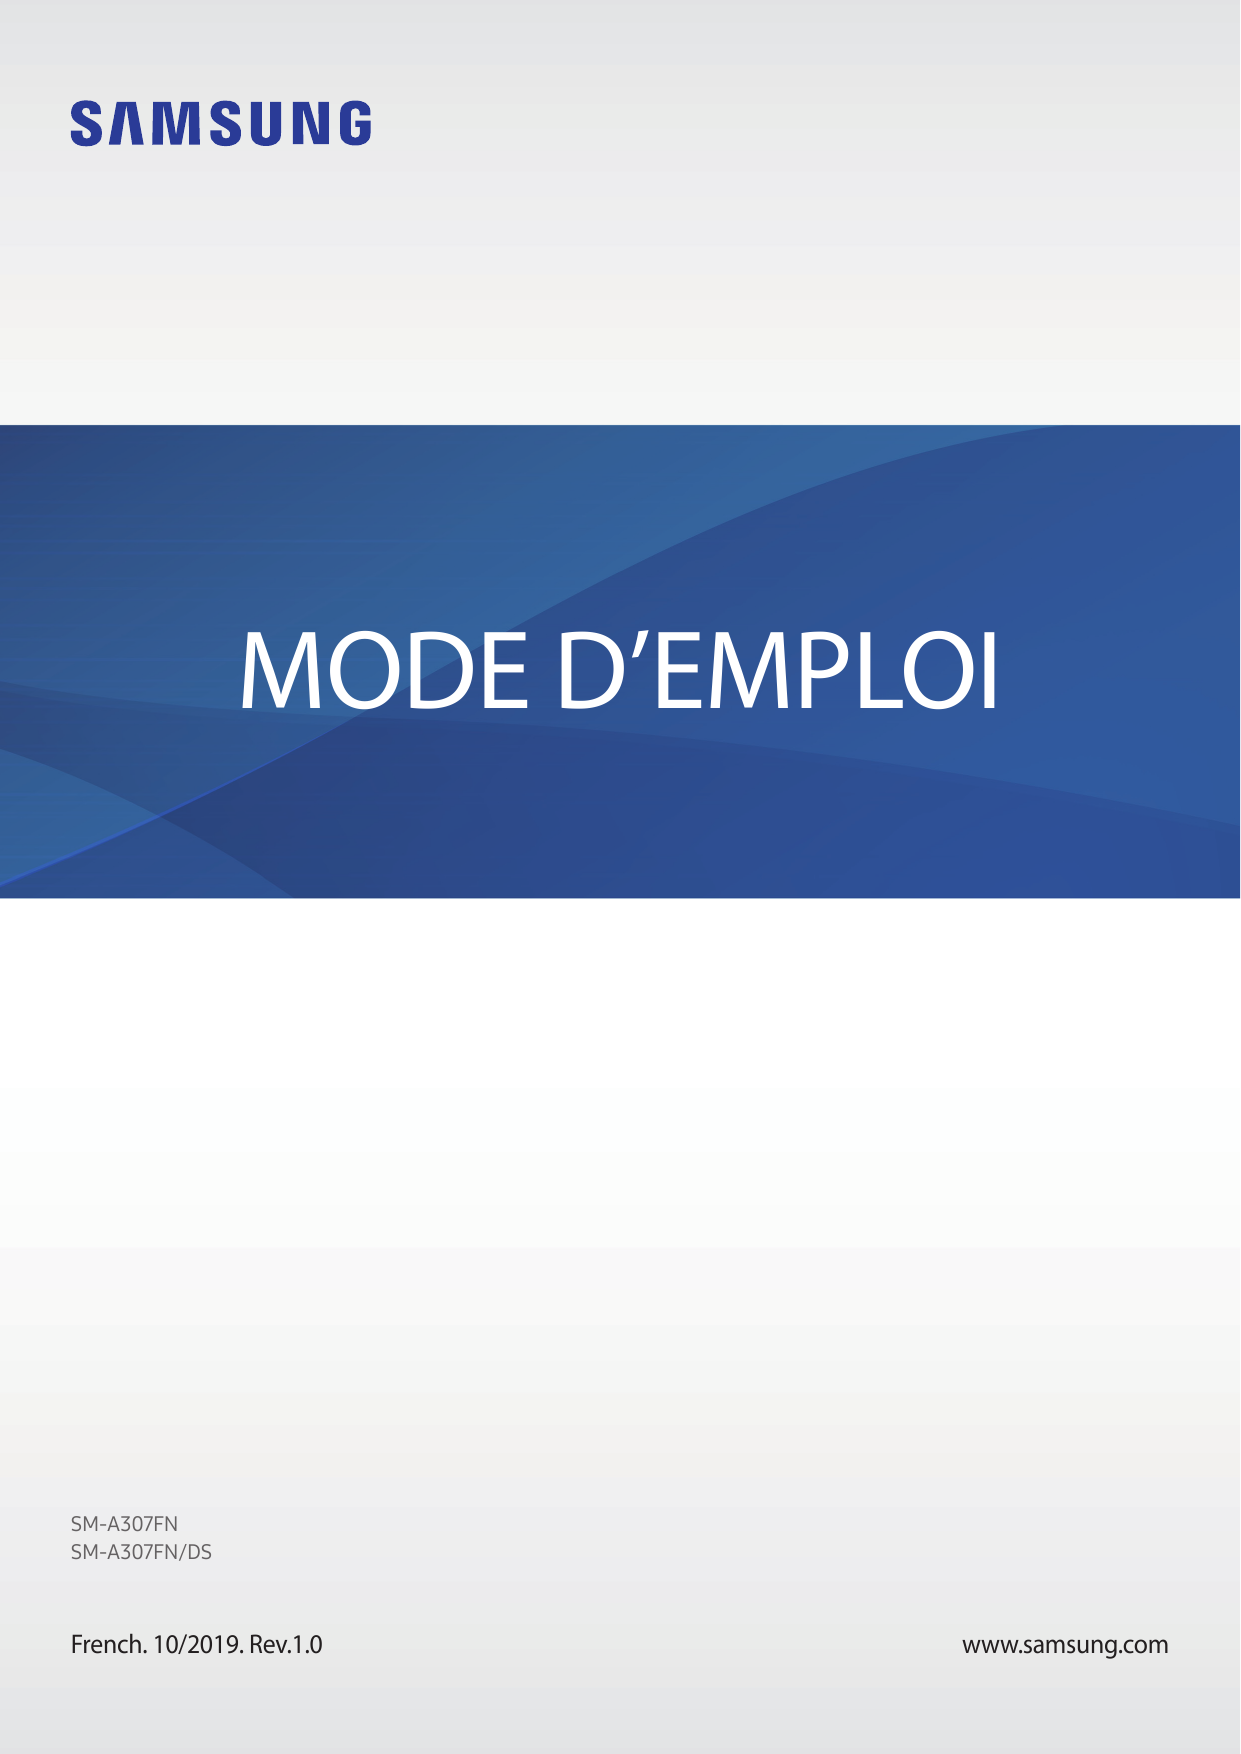 MODE D’EMPLOISM-A307FNSM-A307FN/DSFrench. 10/2019. Rev.1.0www.samsung.com